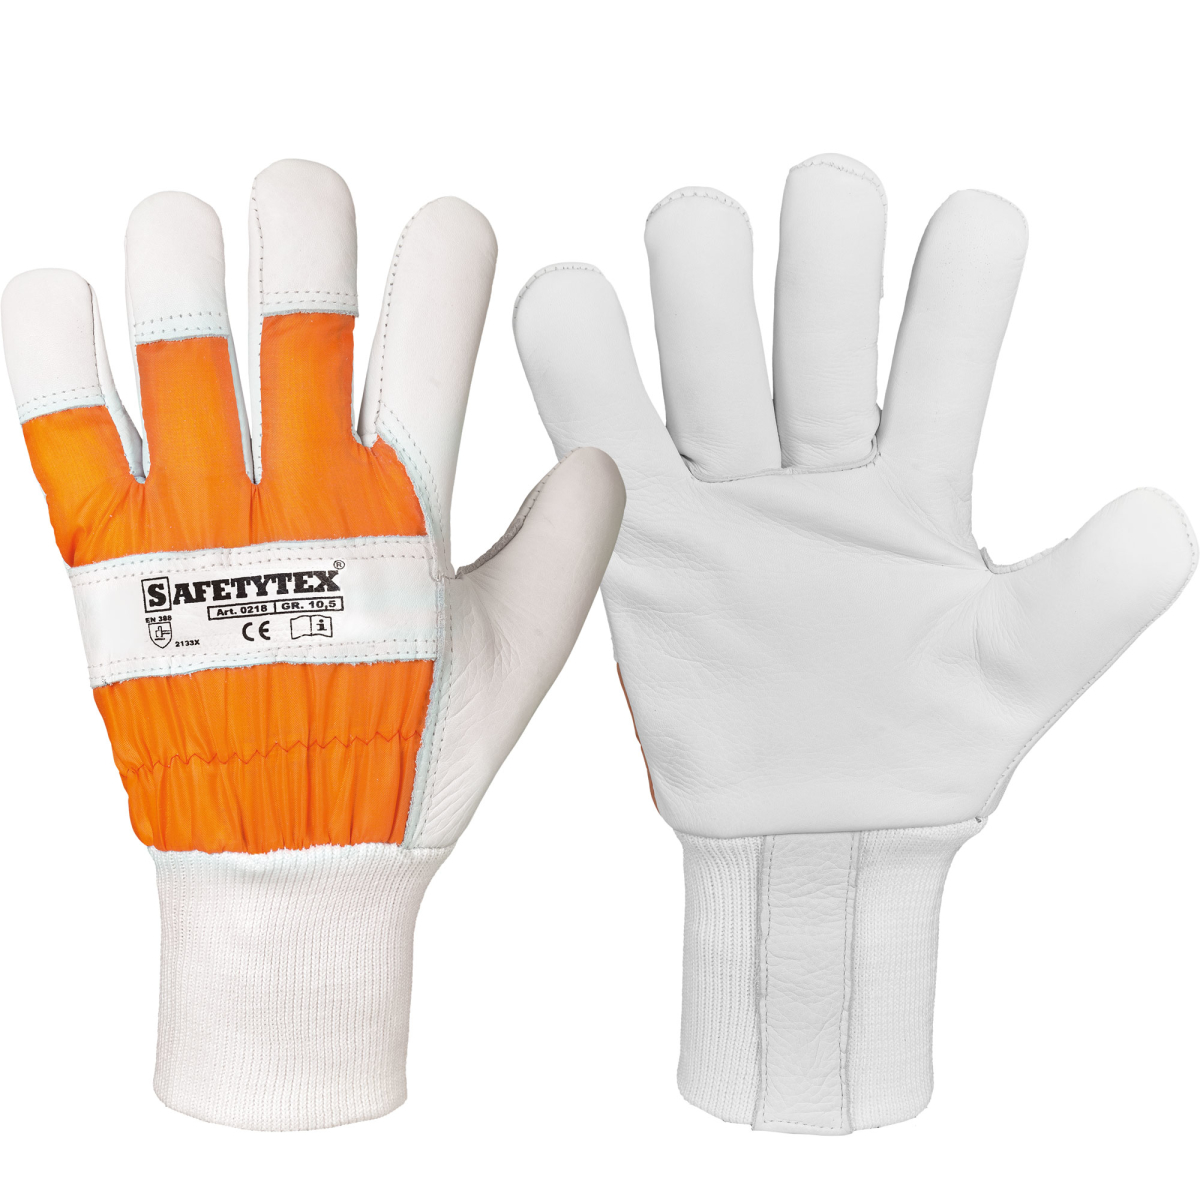 forstschutzhandschuhe aus echtem ledr in weiß mit orangem handruecken 